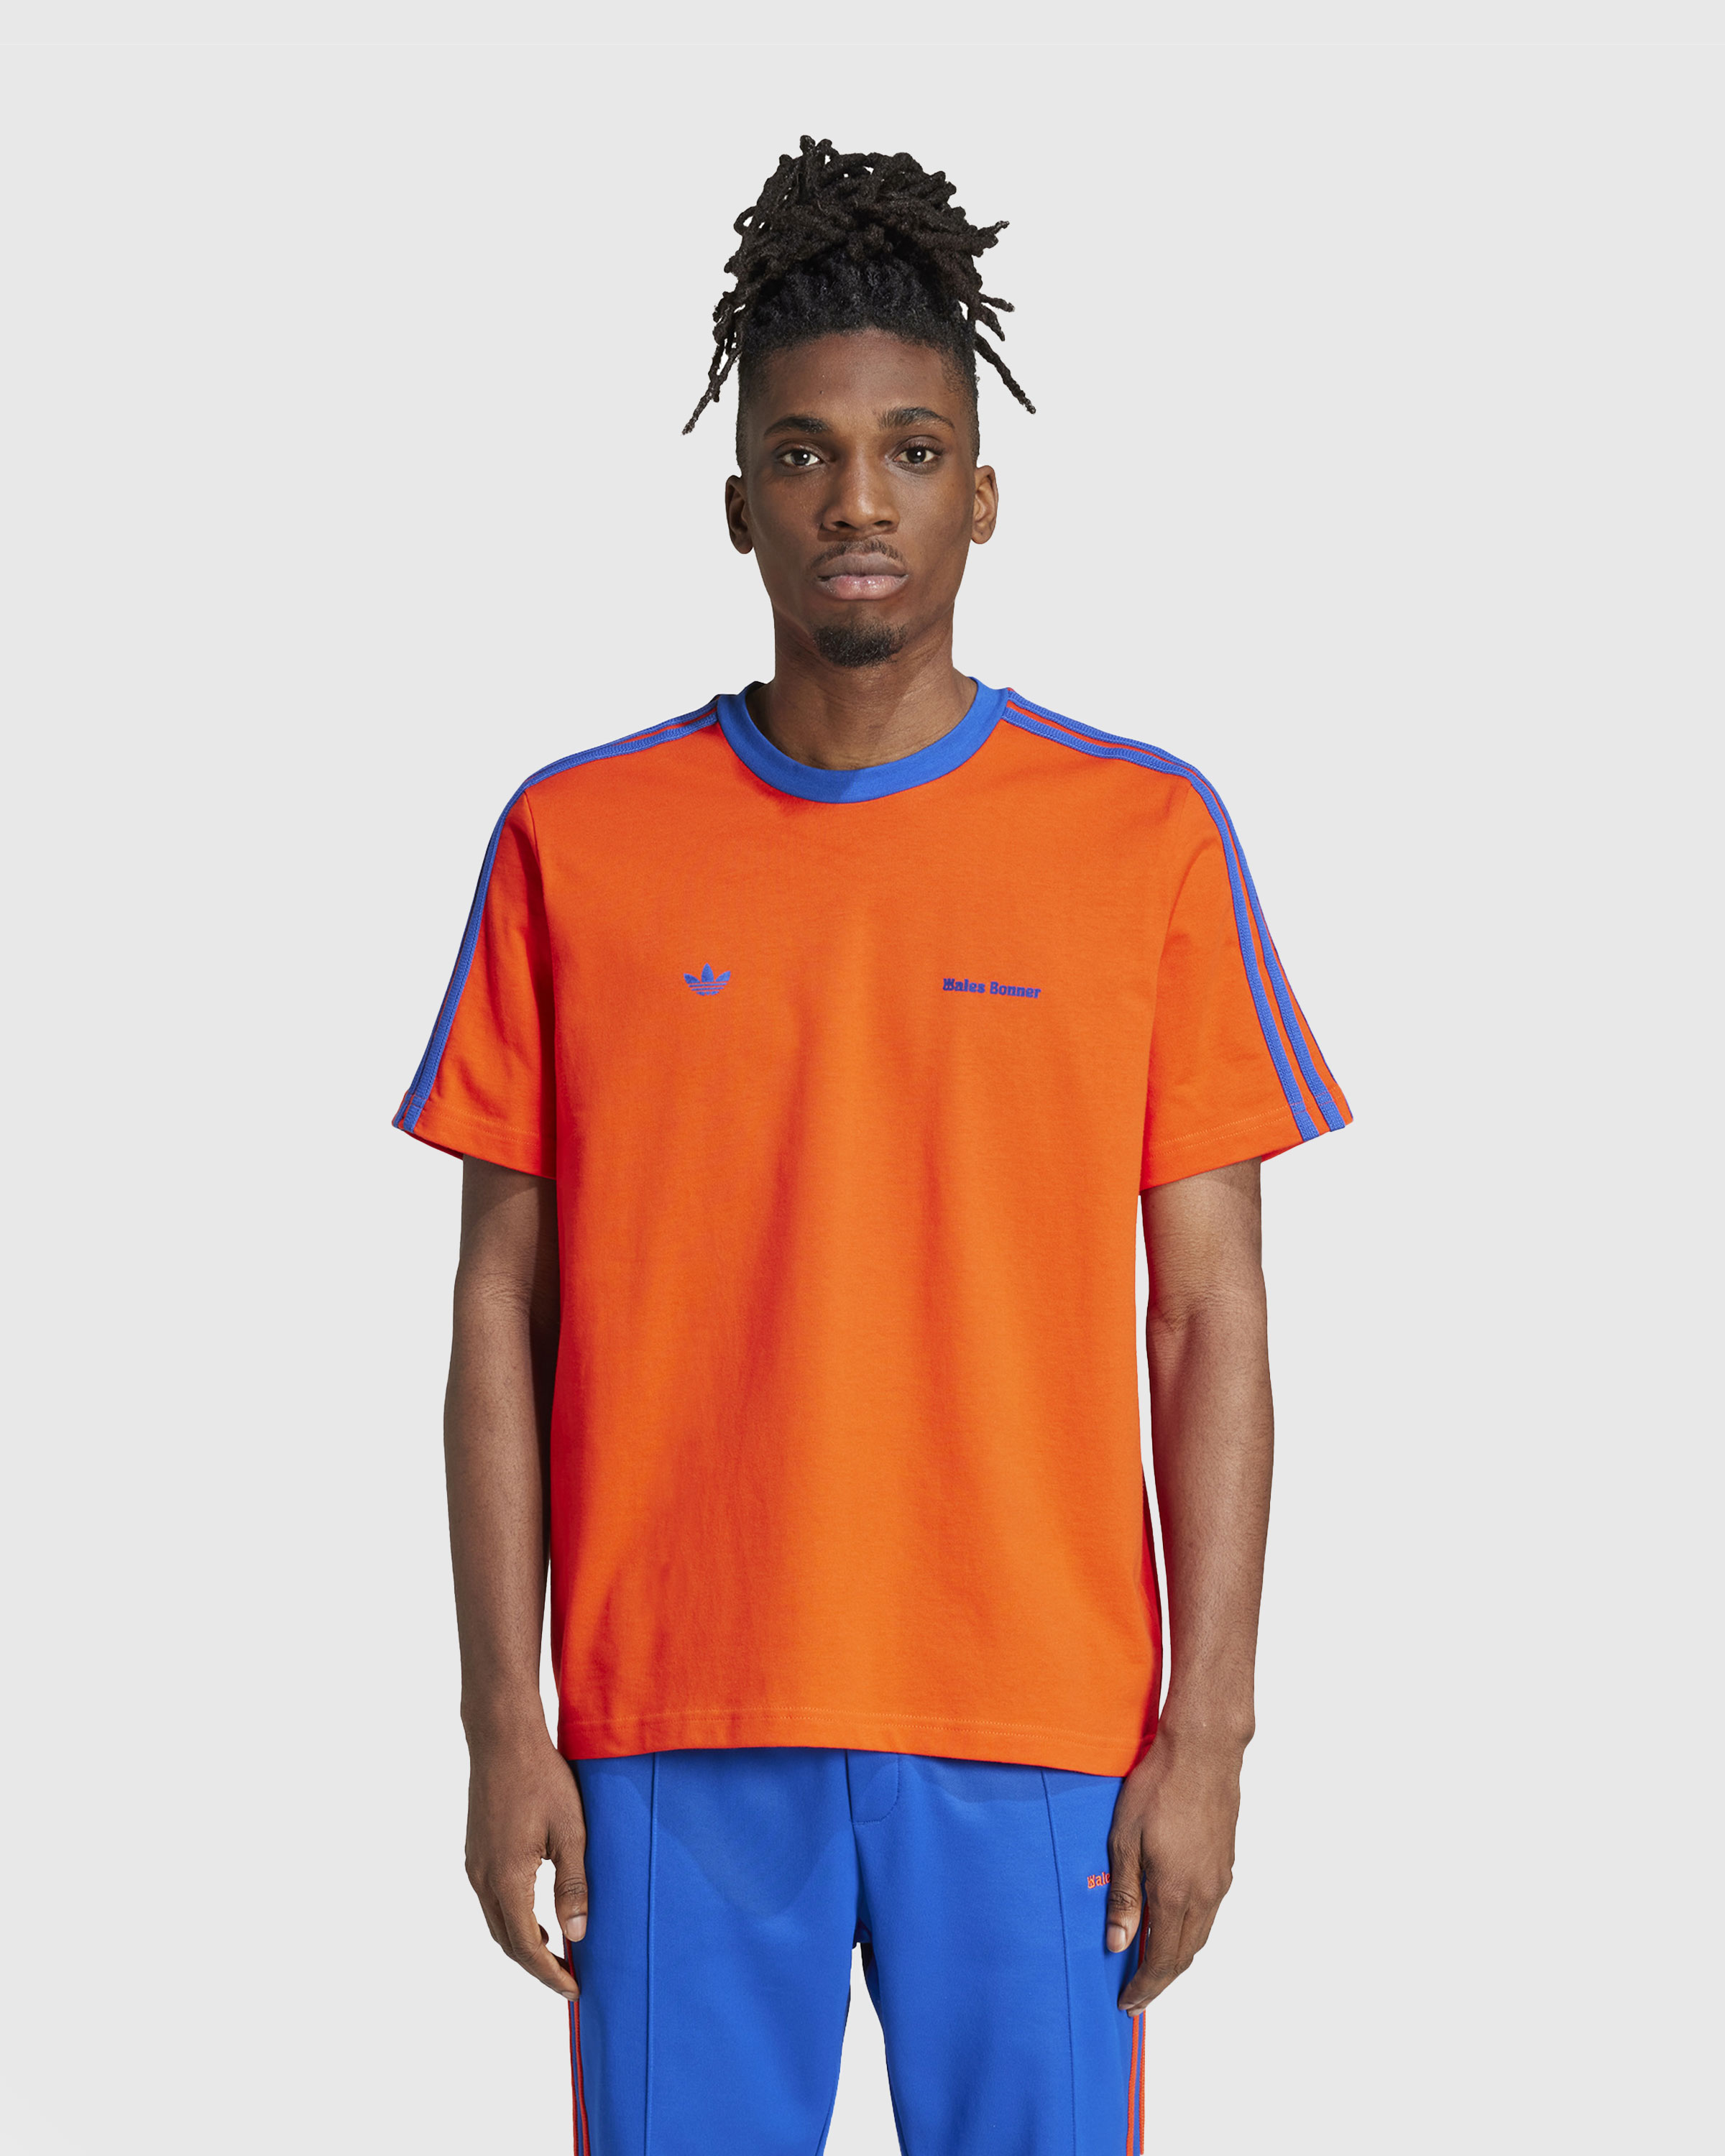 Adidas x Wales Bonner – Short-Sleeve Tee Bold Orange/Team Royal Blue - T-Shirts - Orange - Image 2